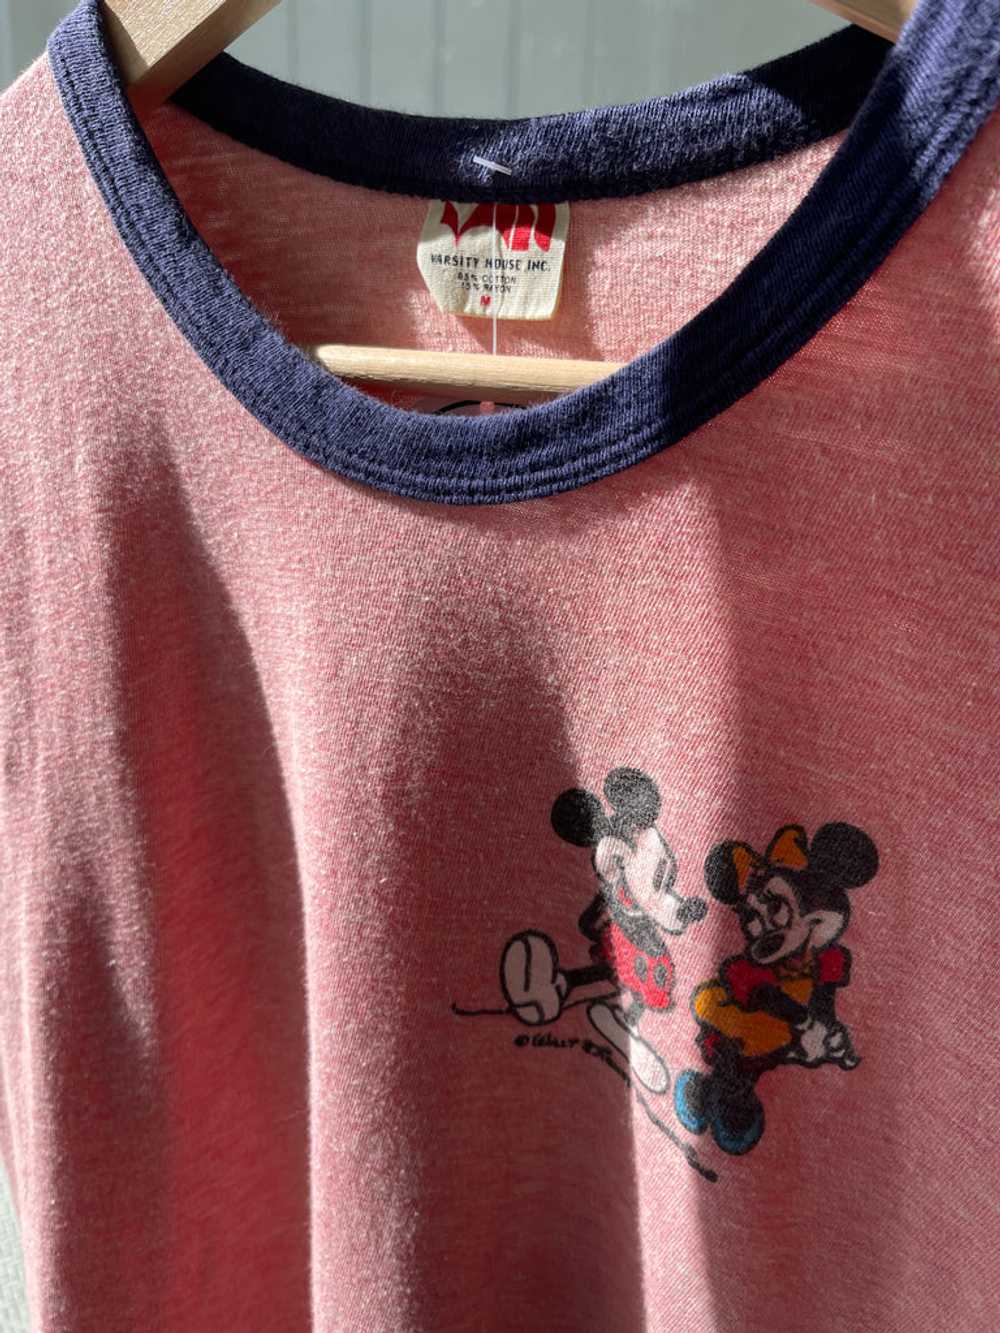 Vintage Disney ringer t shirt - image 6